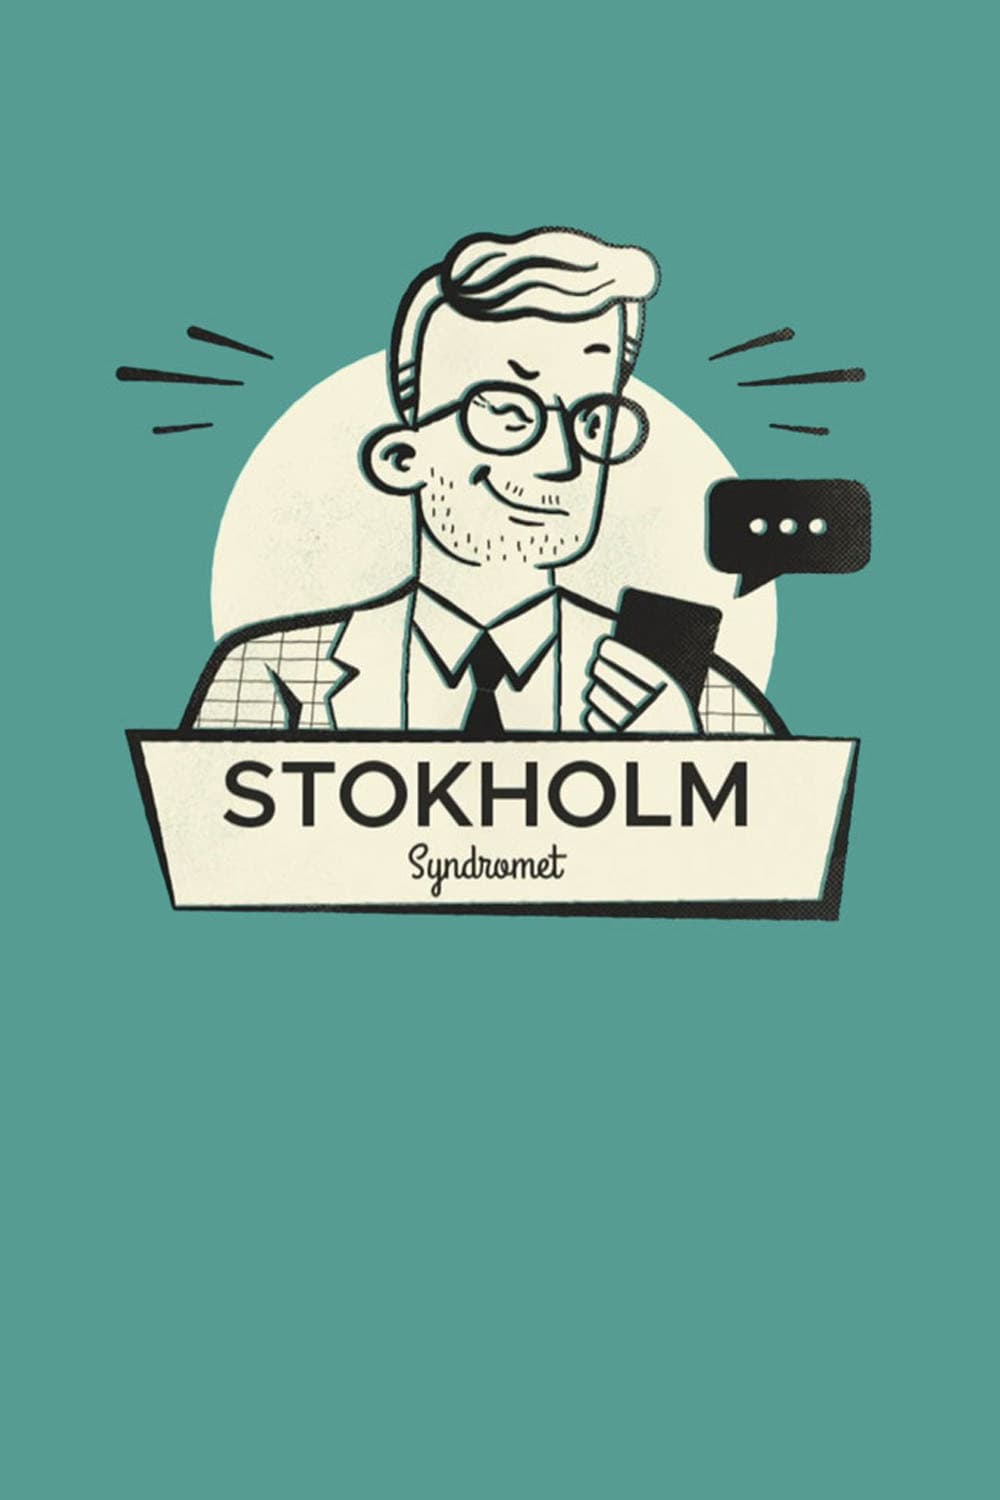 Stokholmsyndromet